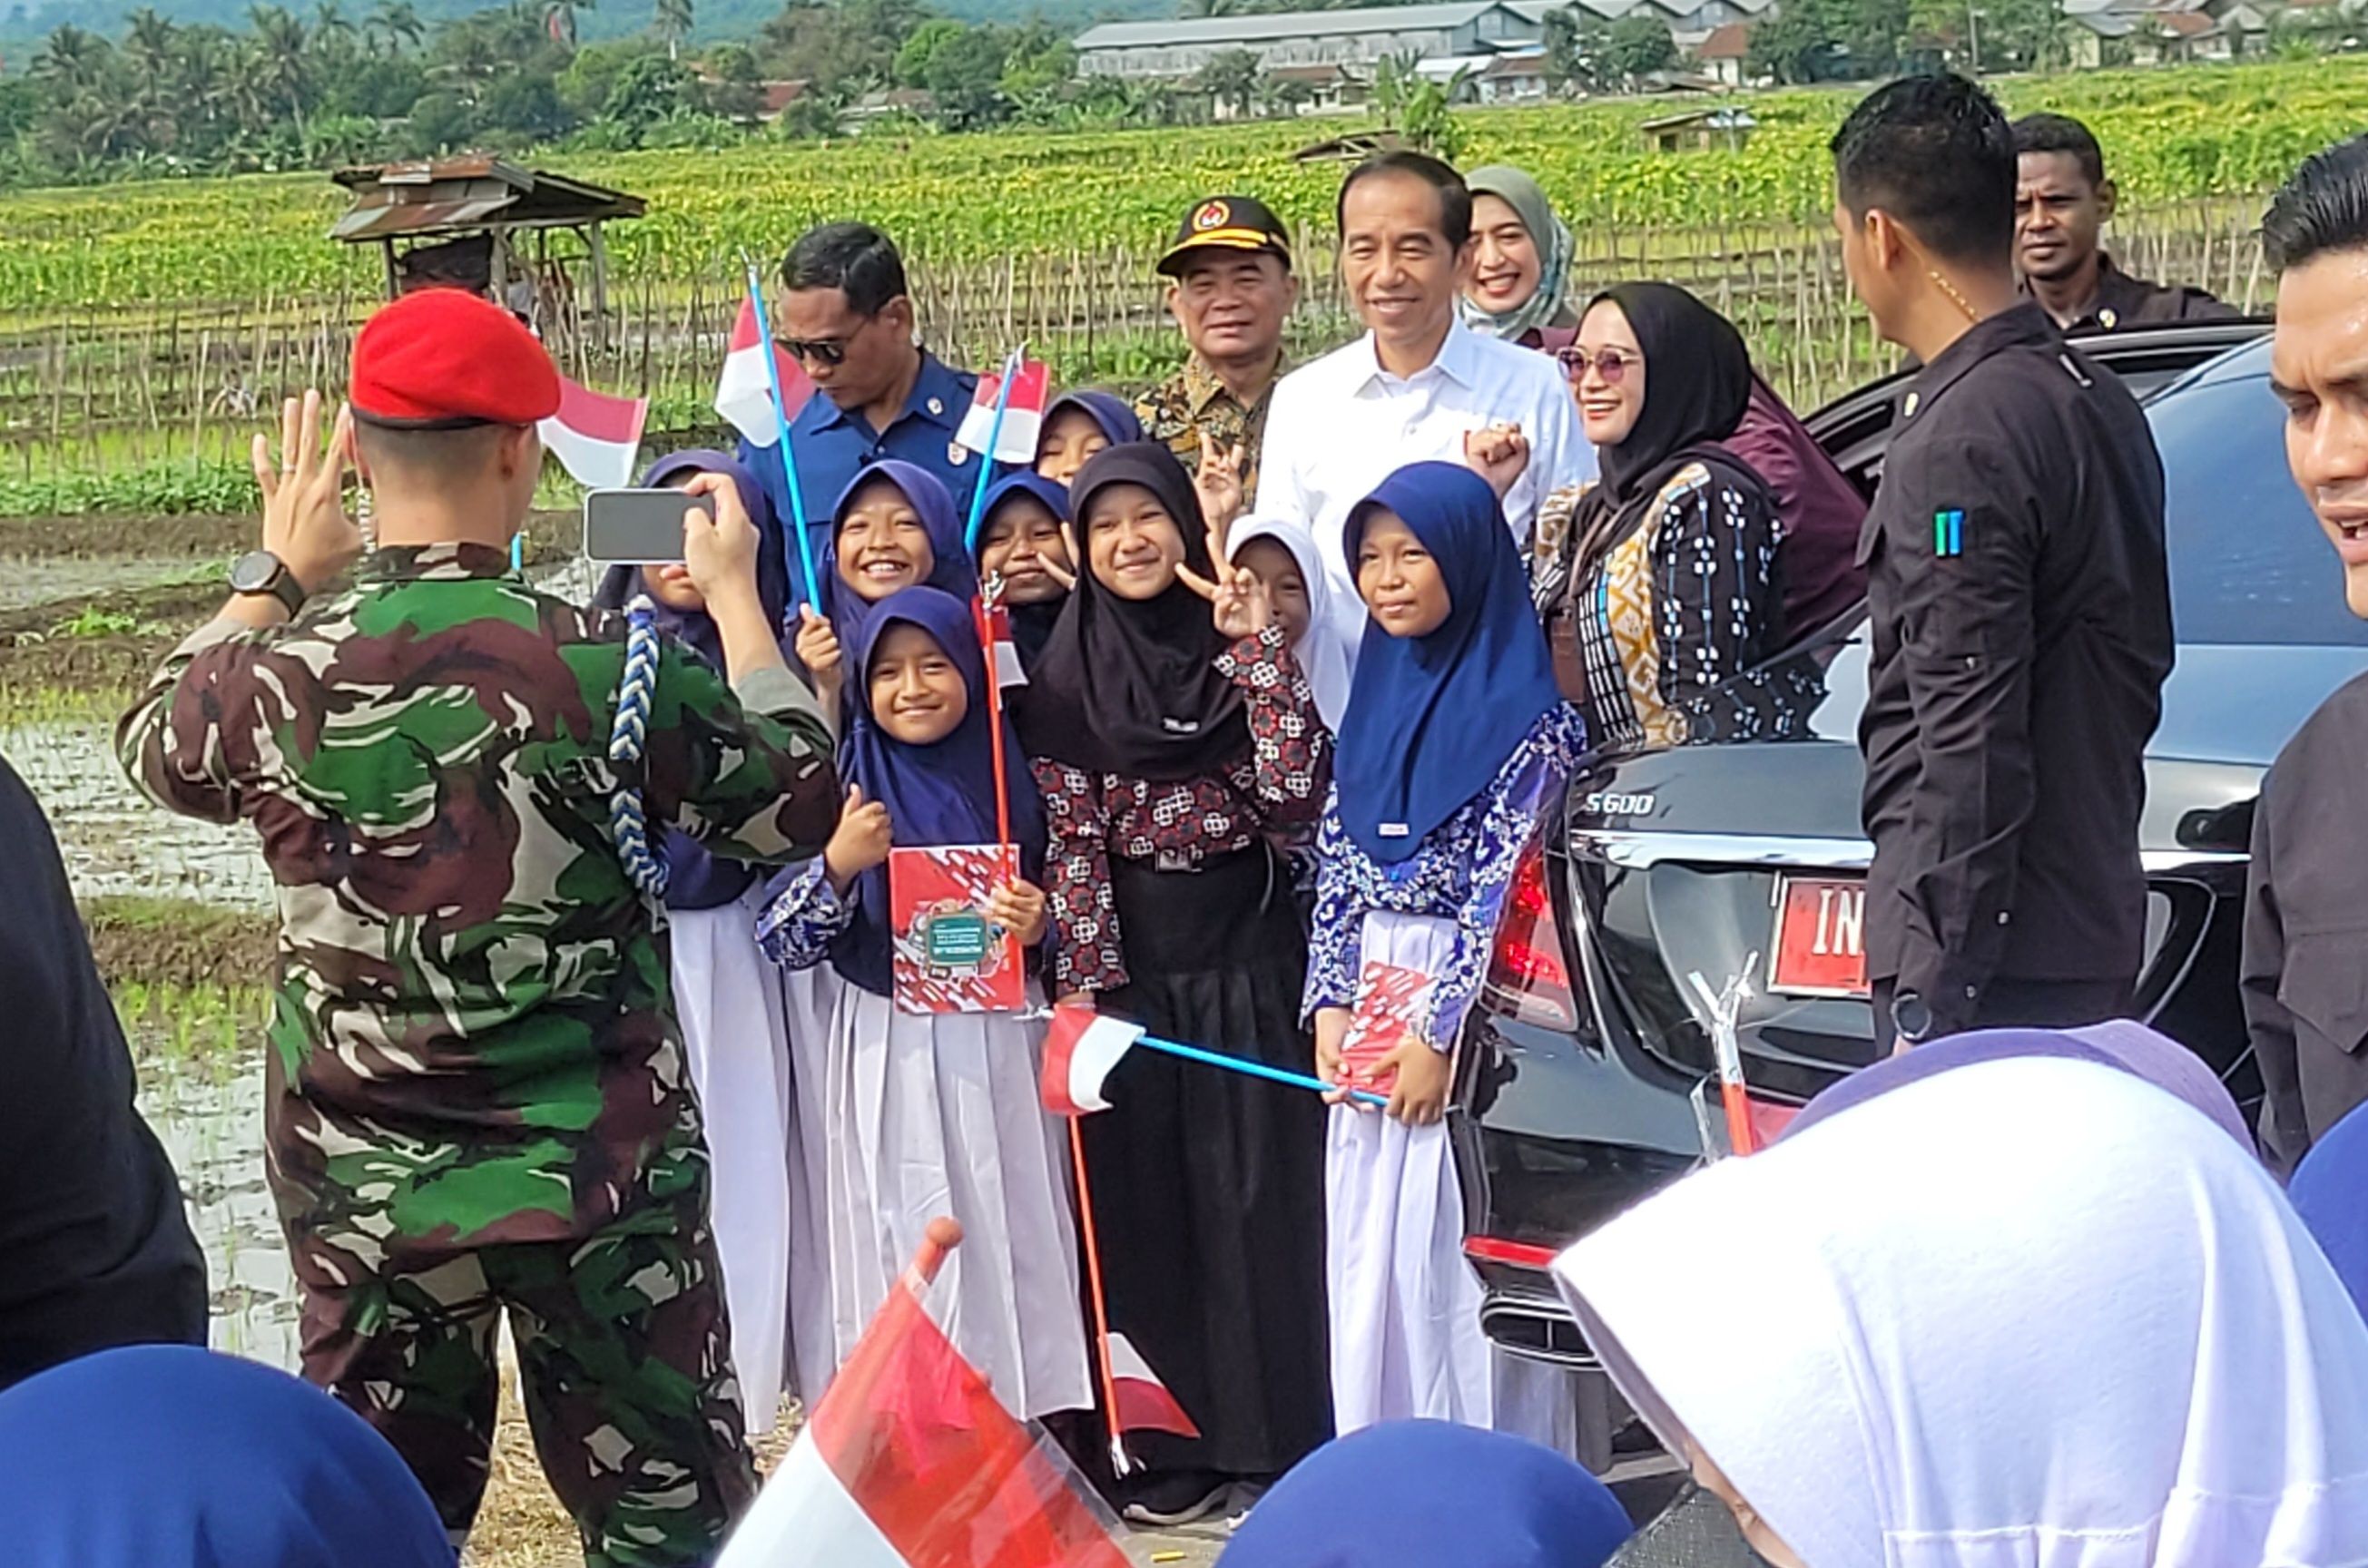 Saking Senangnya Bisa Foto dengan Jokowi, Siswa SD di Banyumas sampai Menangis